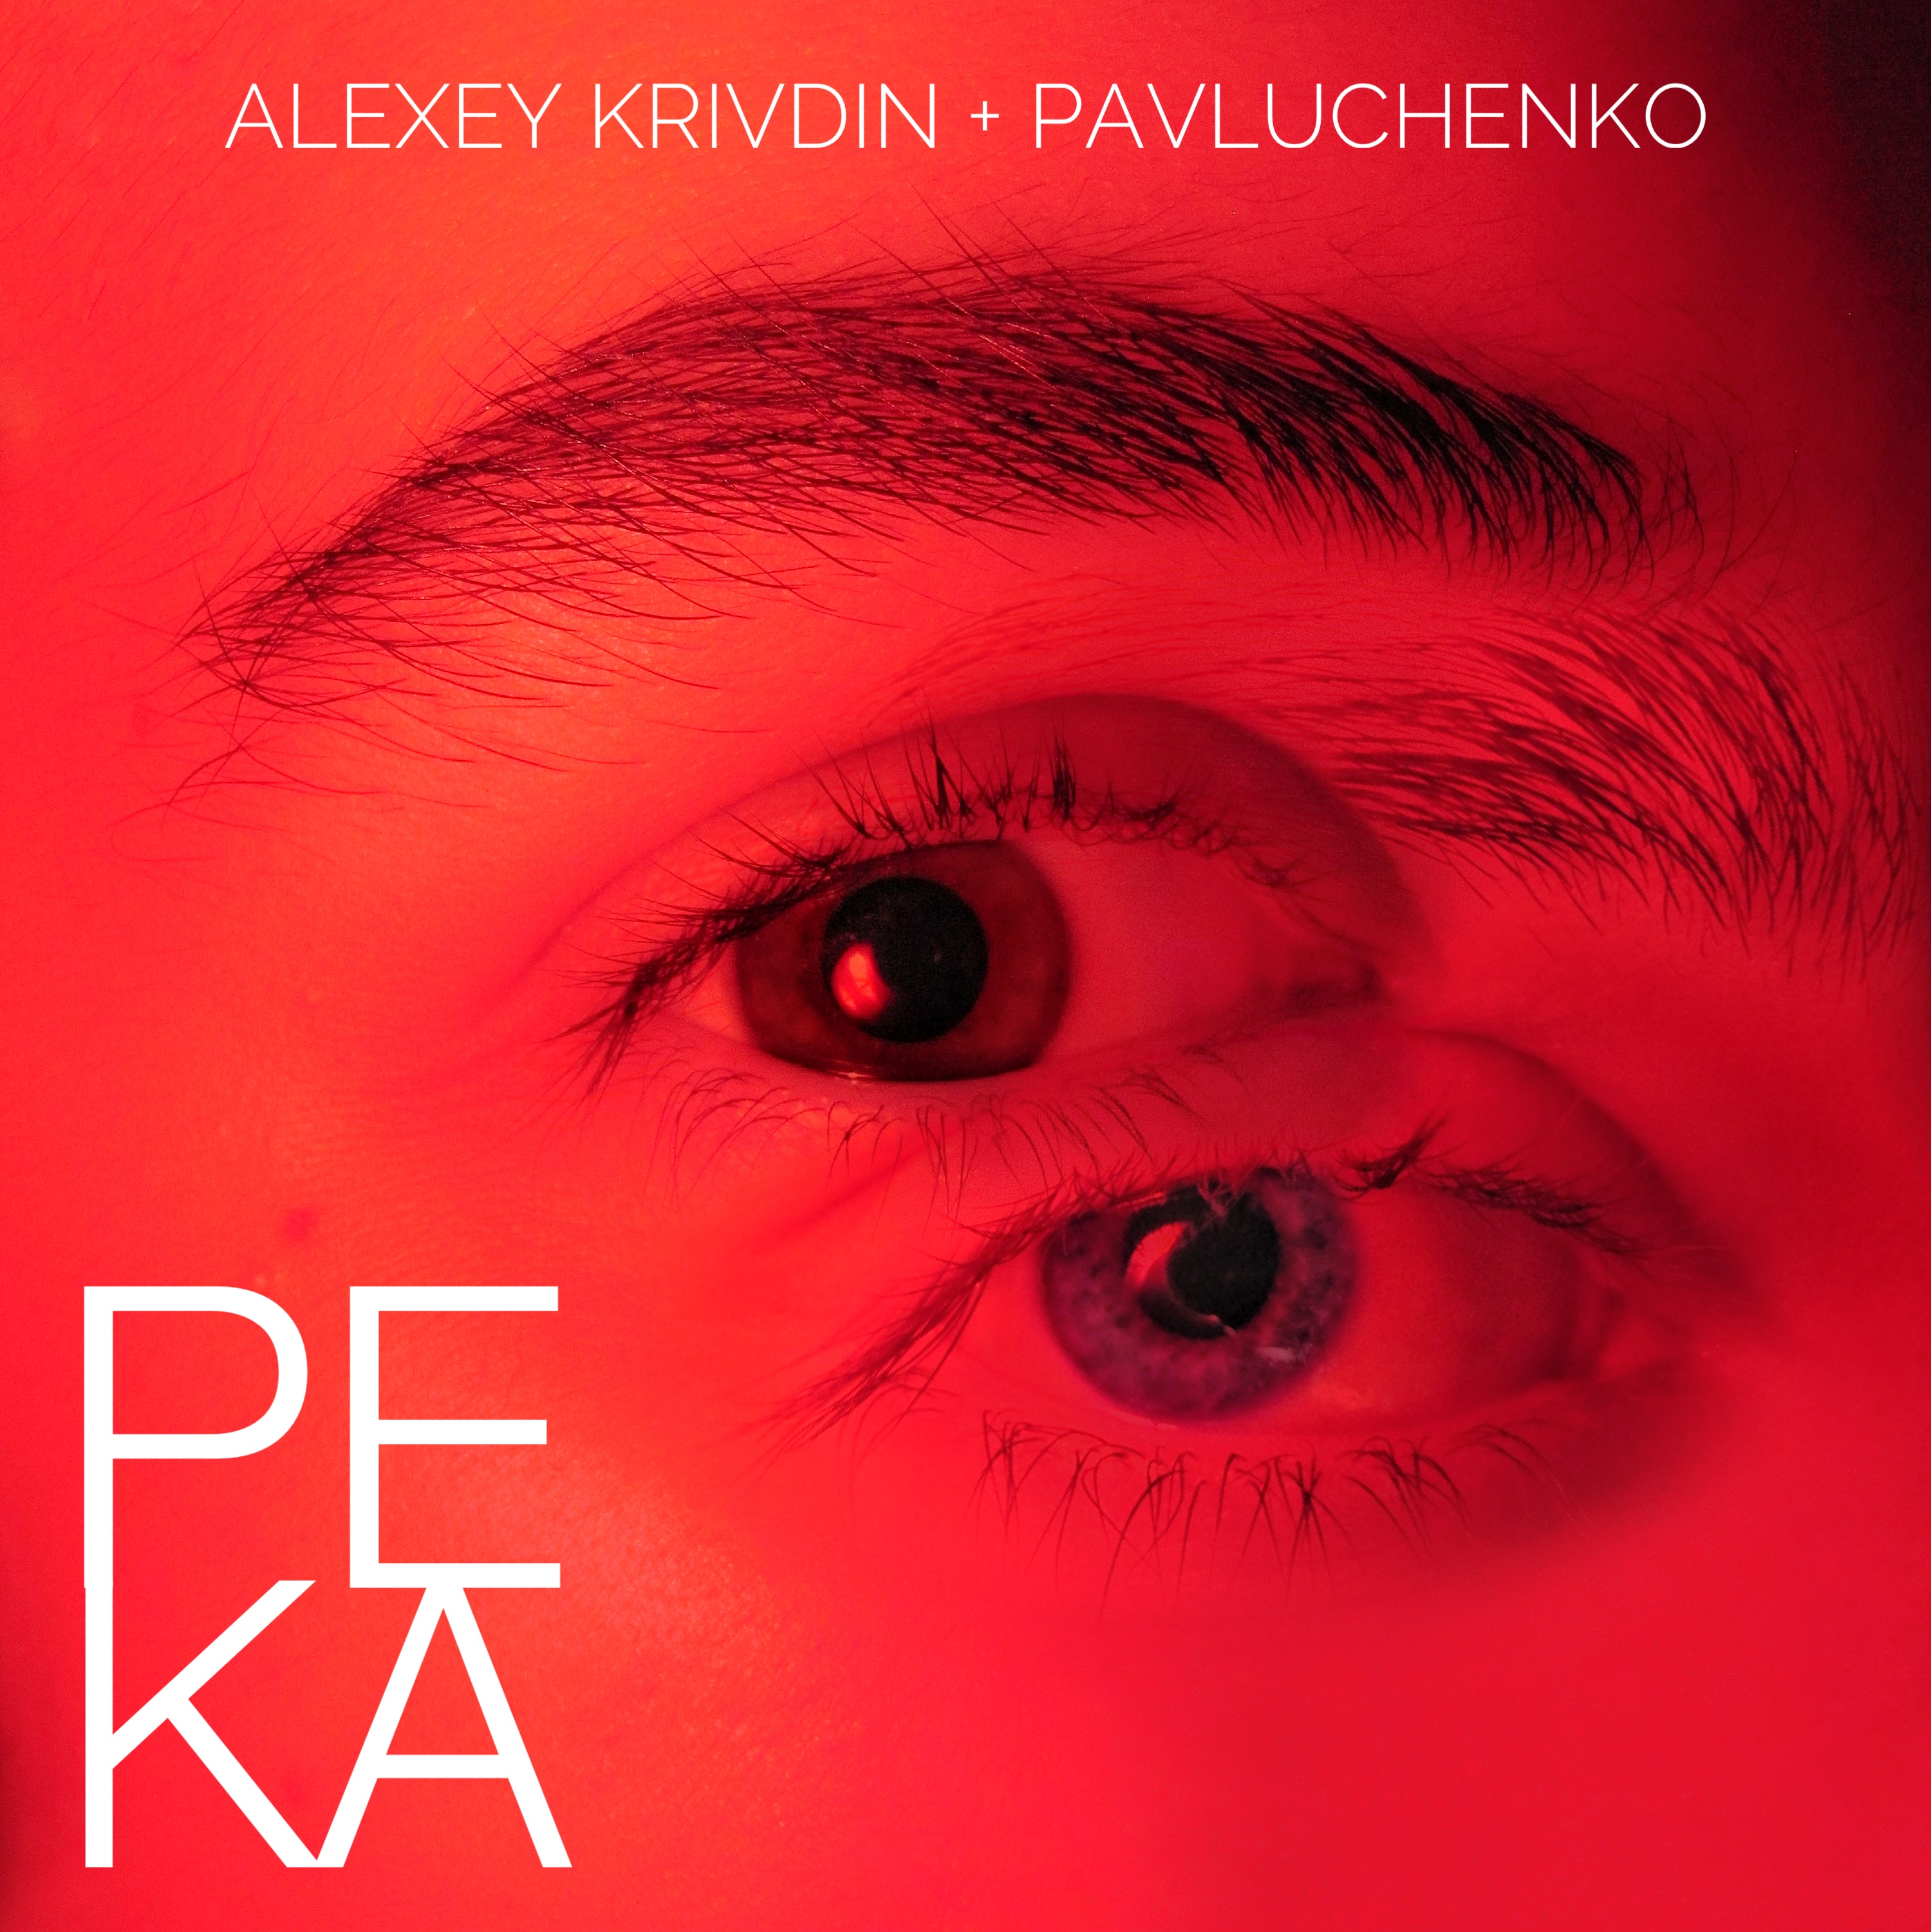 I-download Pavluchenko, Alexey Krivdin - Река